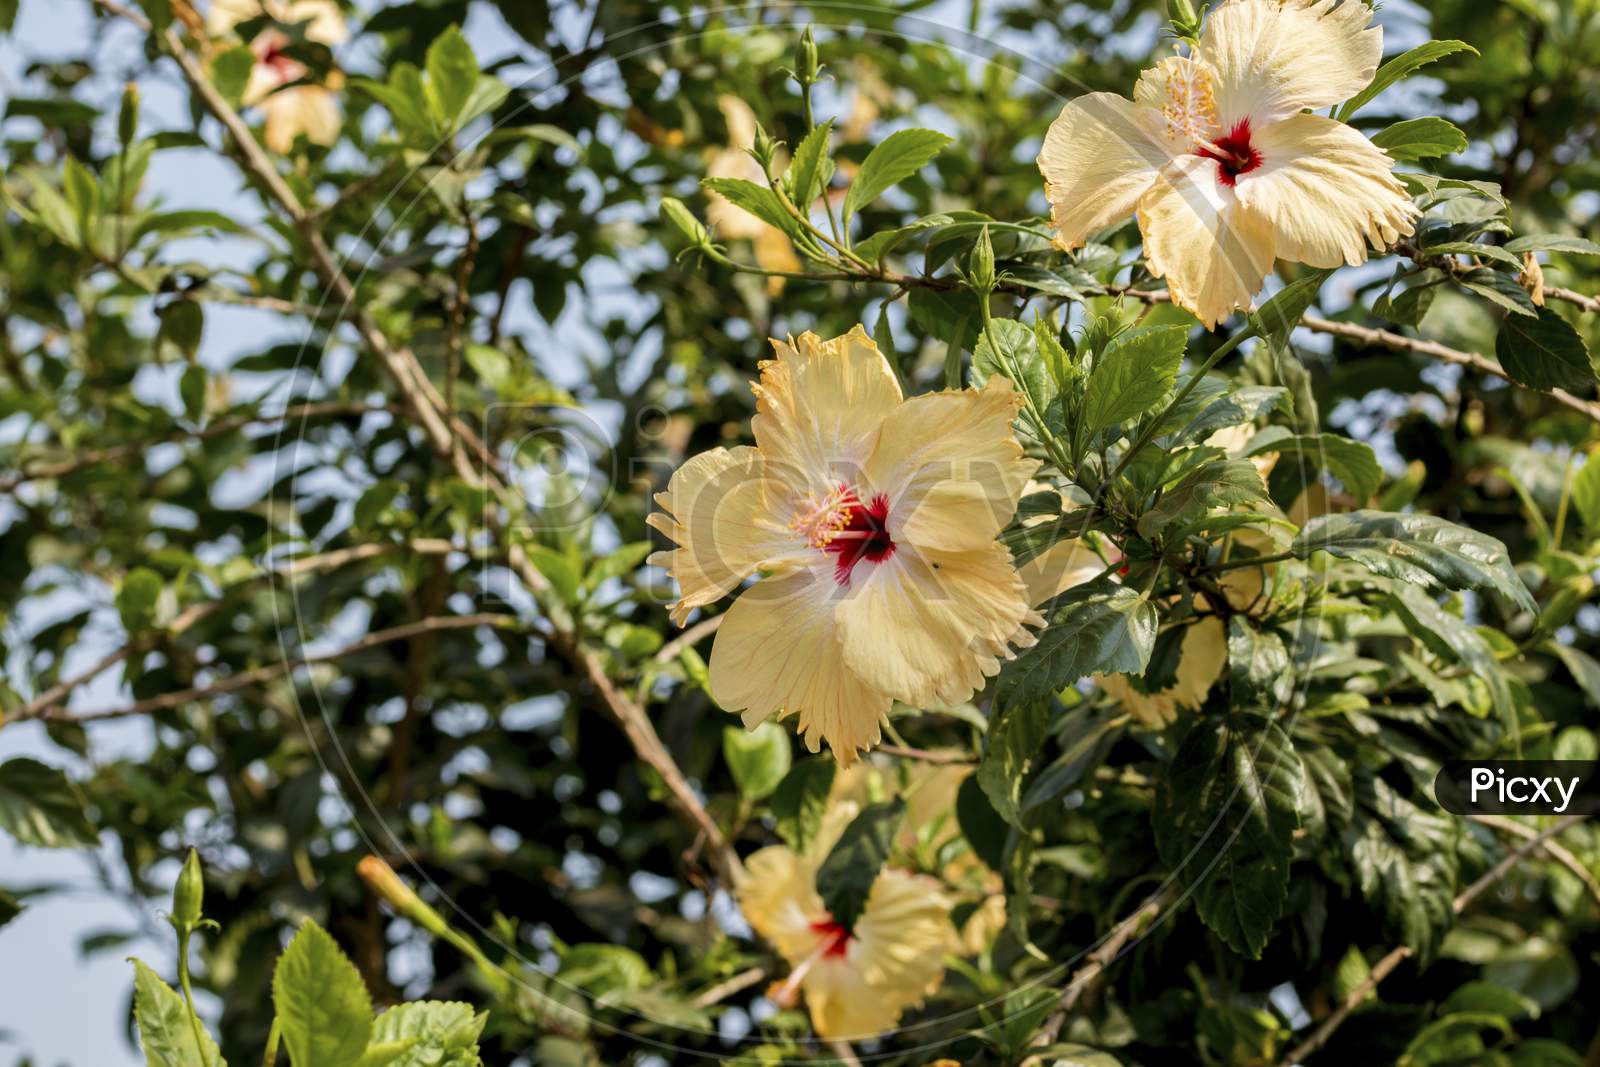 yellowish white hibiscus flowers